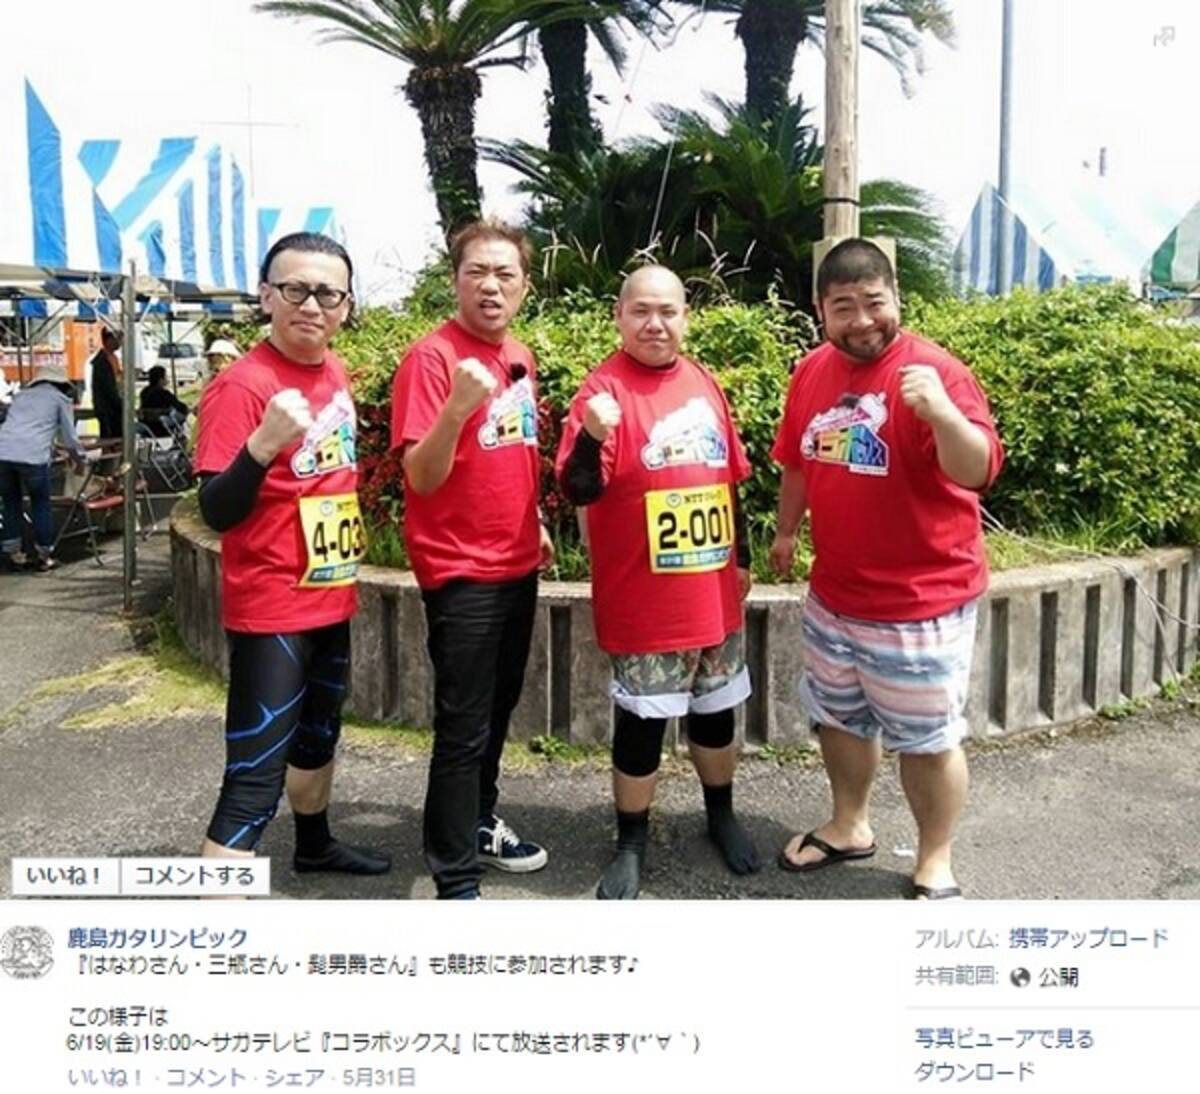 はなわ 髭男爵 三瓶が佐賀の 鹿島ガタリンピック でユニークな競技に挑戦 15年6月4日 エキサイトニュース